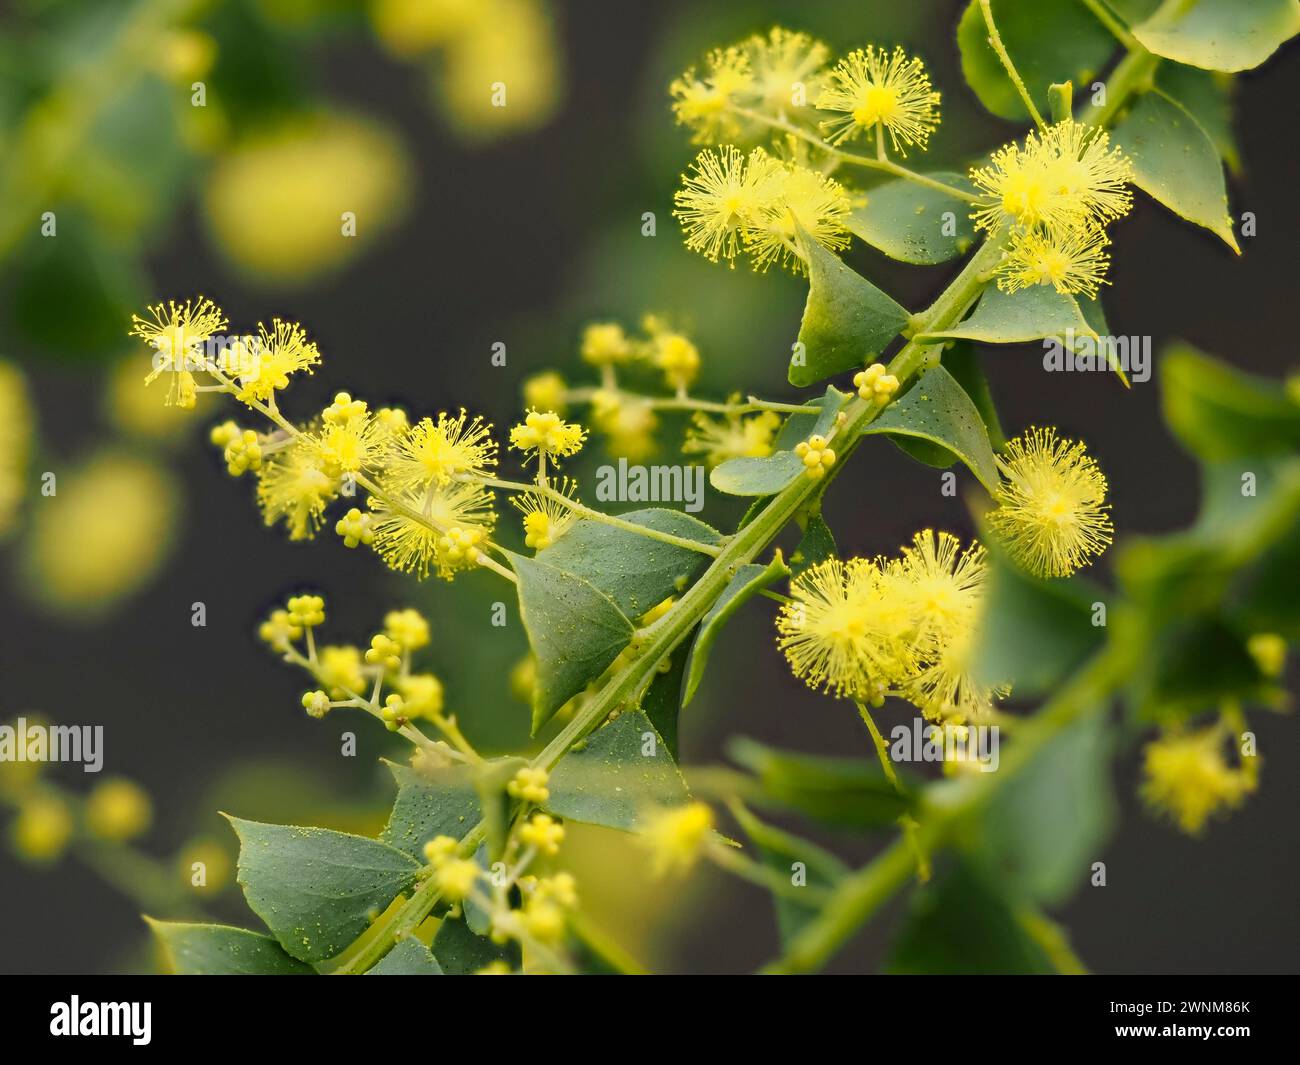 Powderpuff gelbe Blüten der Australian Ovens wattle, Acacia pravissima, ein halbharter immergrüner Sträucher mit silbrigen Phylloden Stockfoto